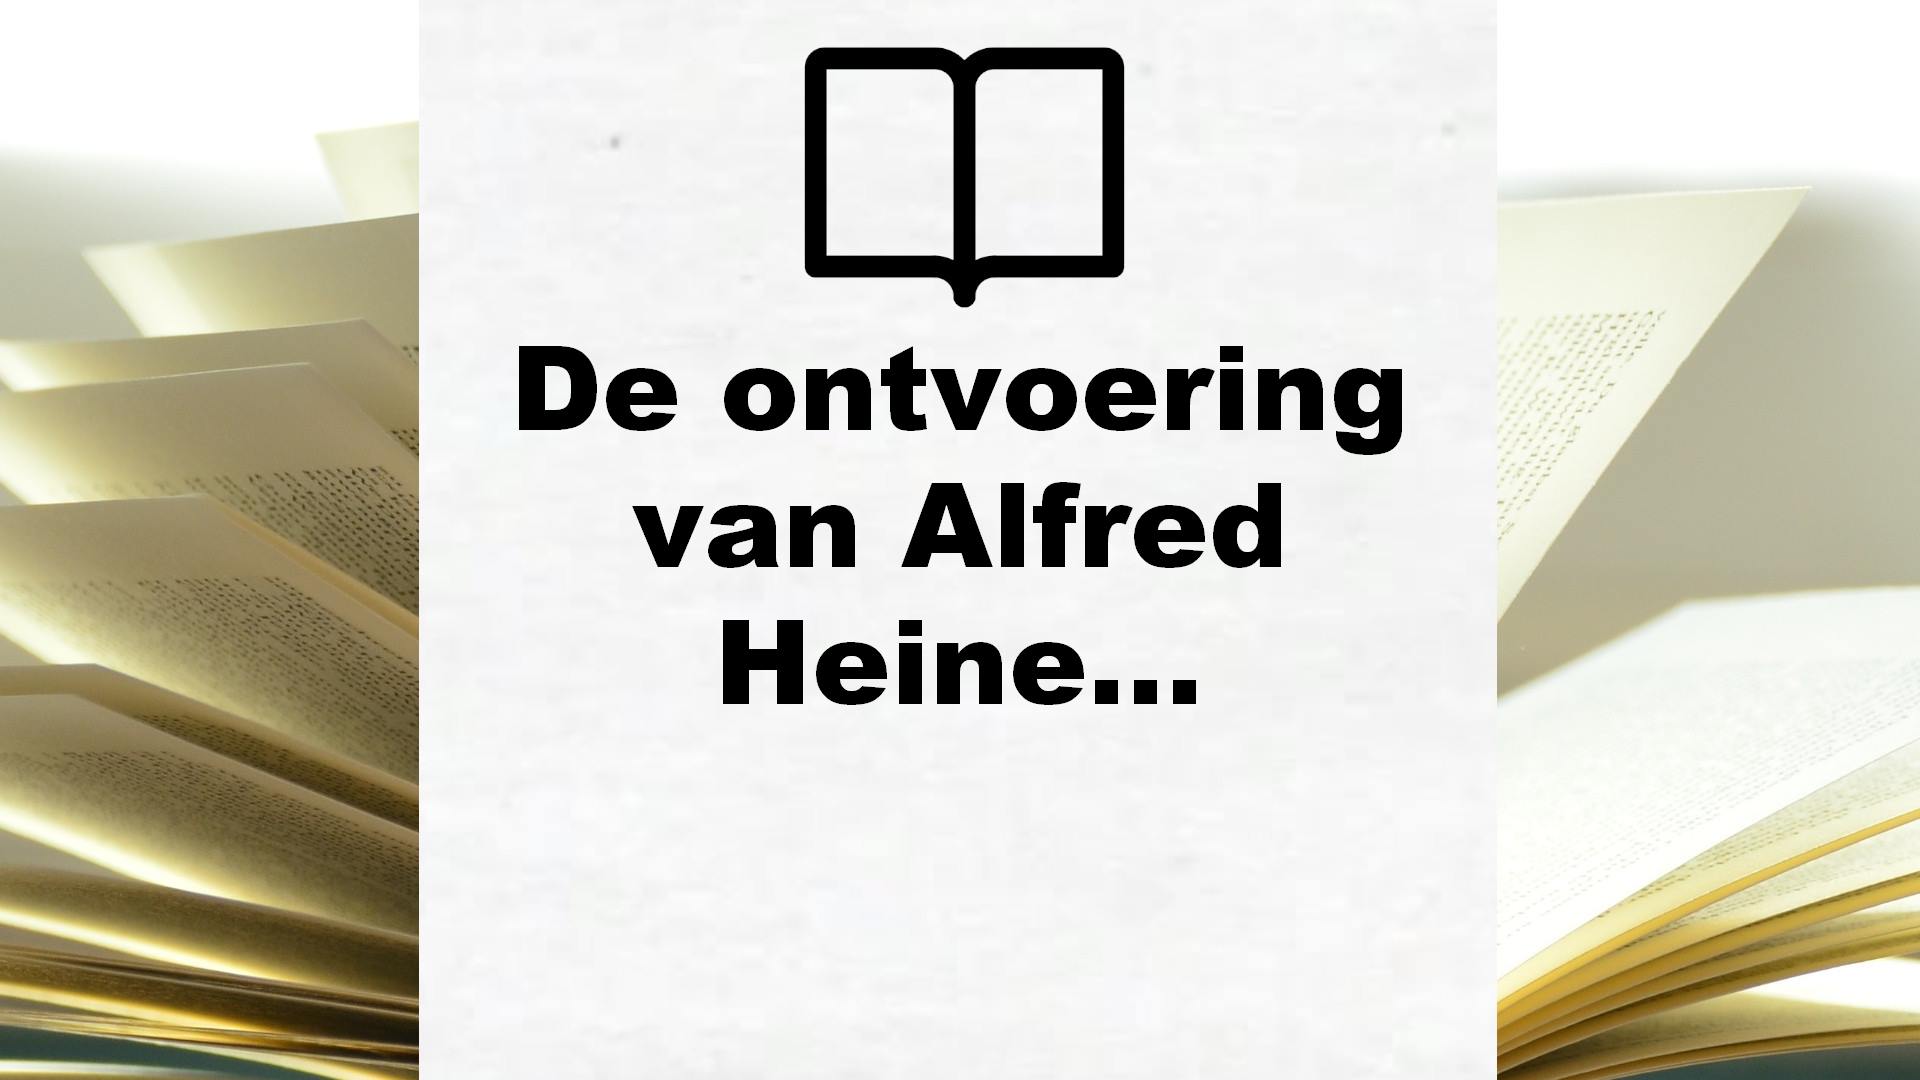 De ontvoering van Alfred Heineken – Boekrecensie